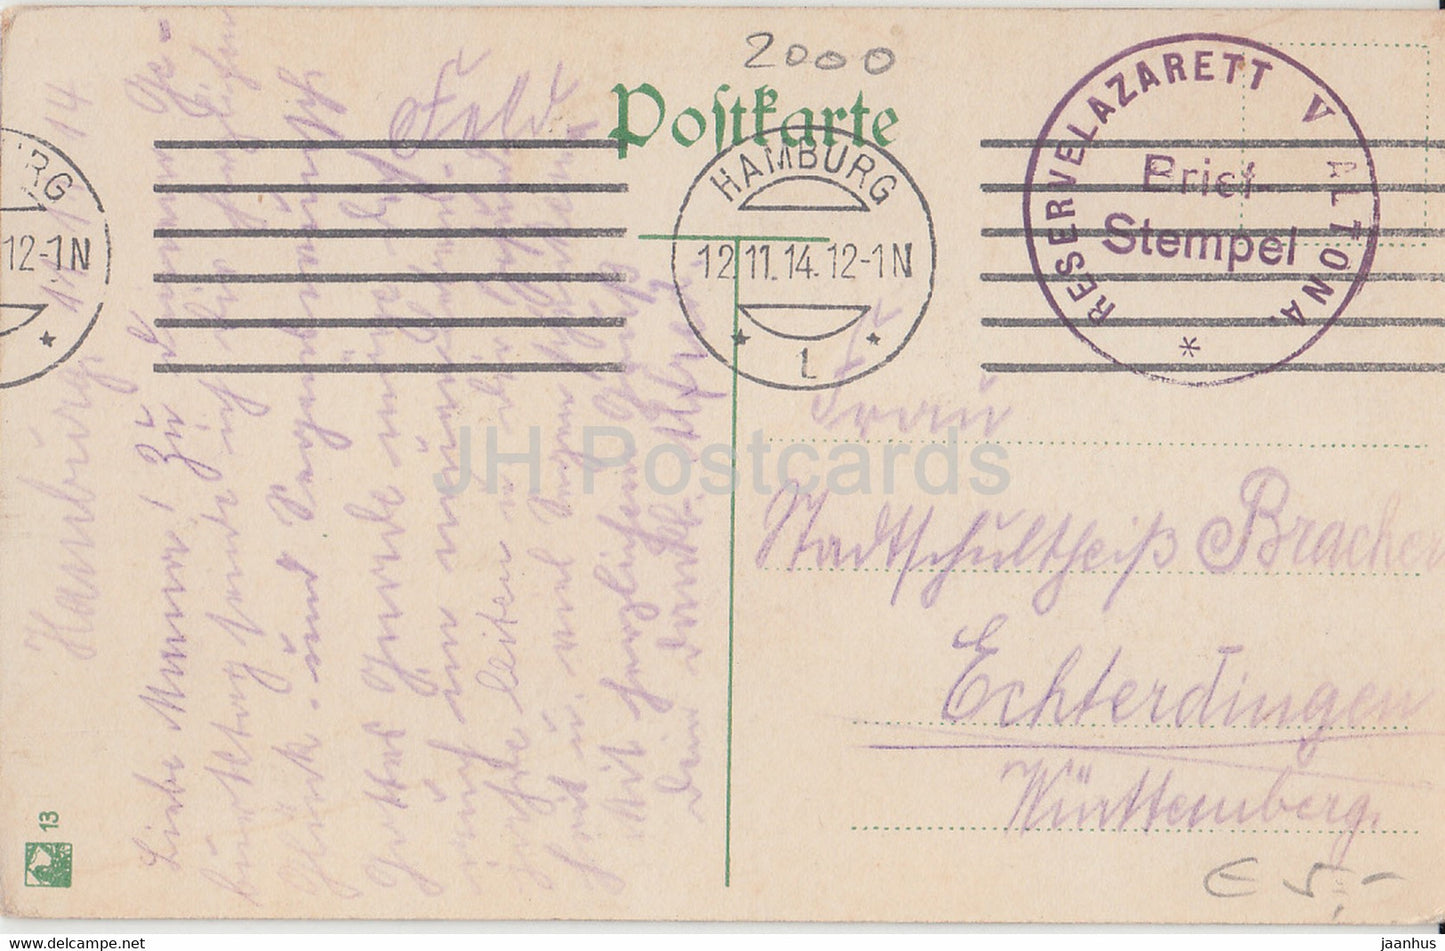 Hamburg - Nicolaikirche - Kirche - Feldpost - Reservelazarett V Altona - 13 - alte Postkarte - 1914 - Deutschland - gebraucht